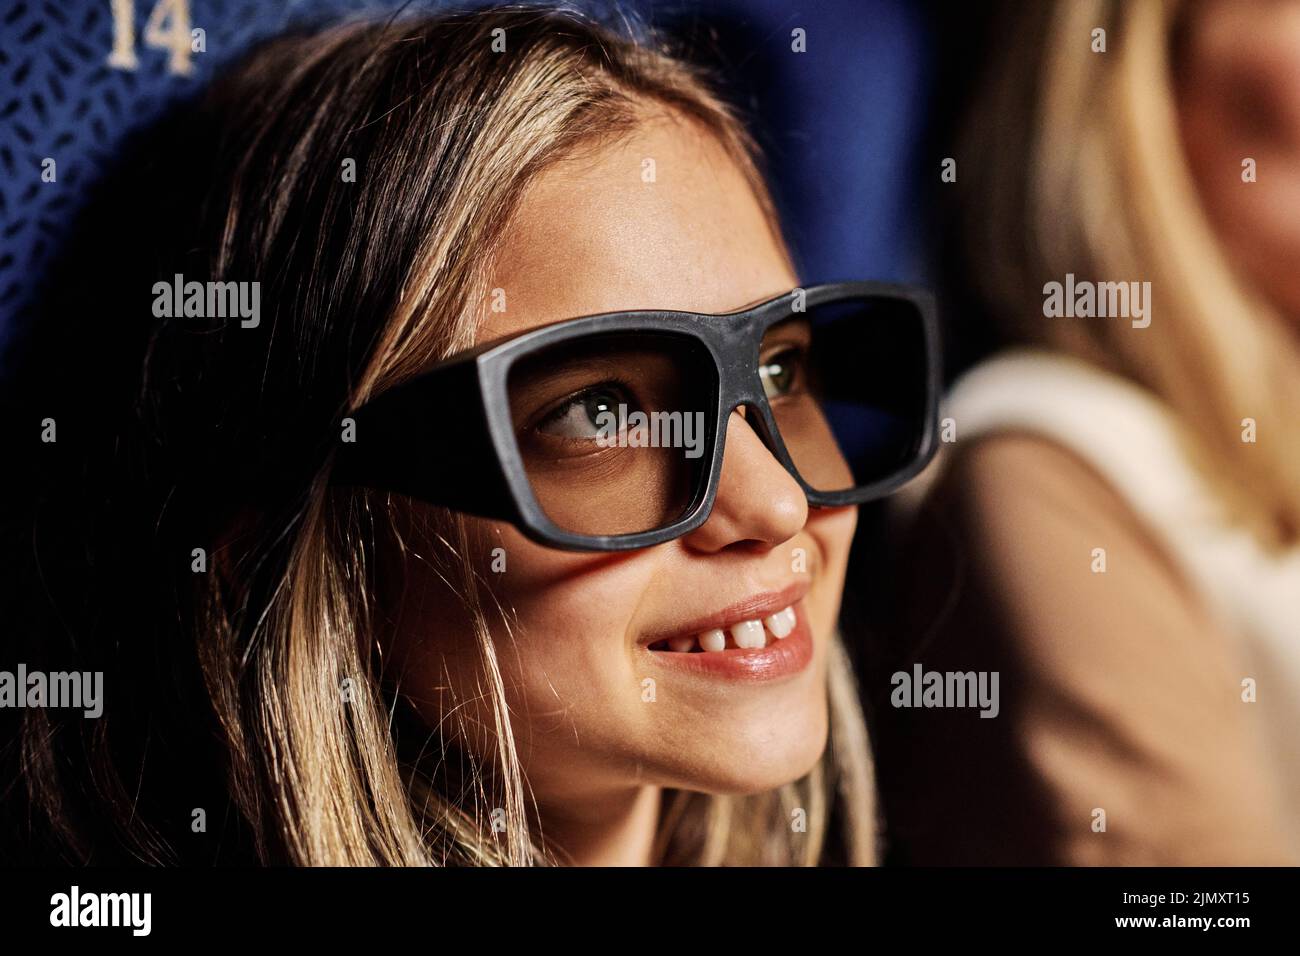 Retrato de un primer plano de una niña preadolescente caucásica con gafas 3D polarizadas que disfruta viendo una película en el cine Foto de stock